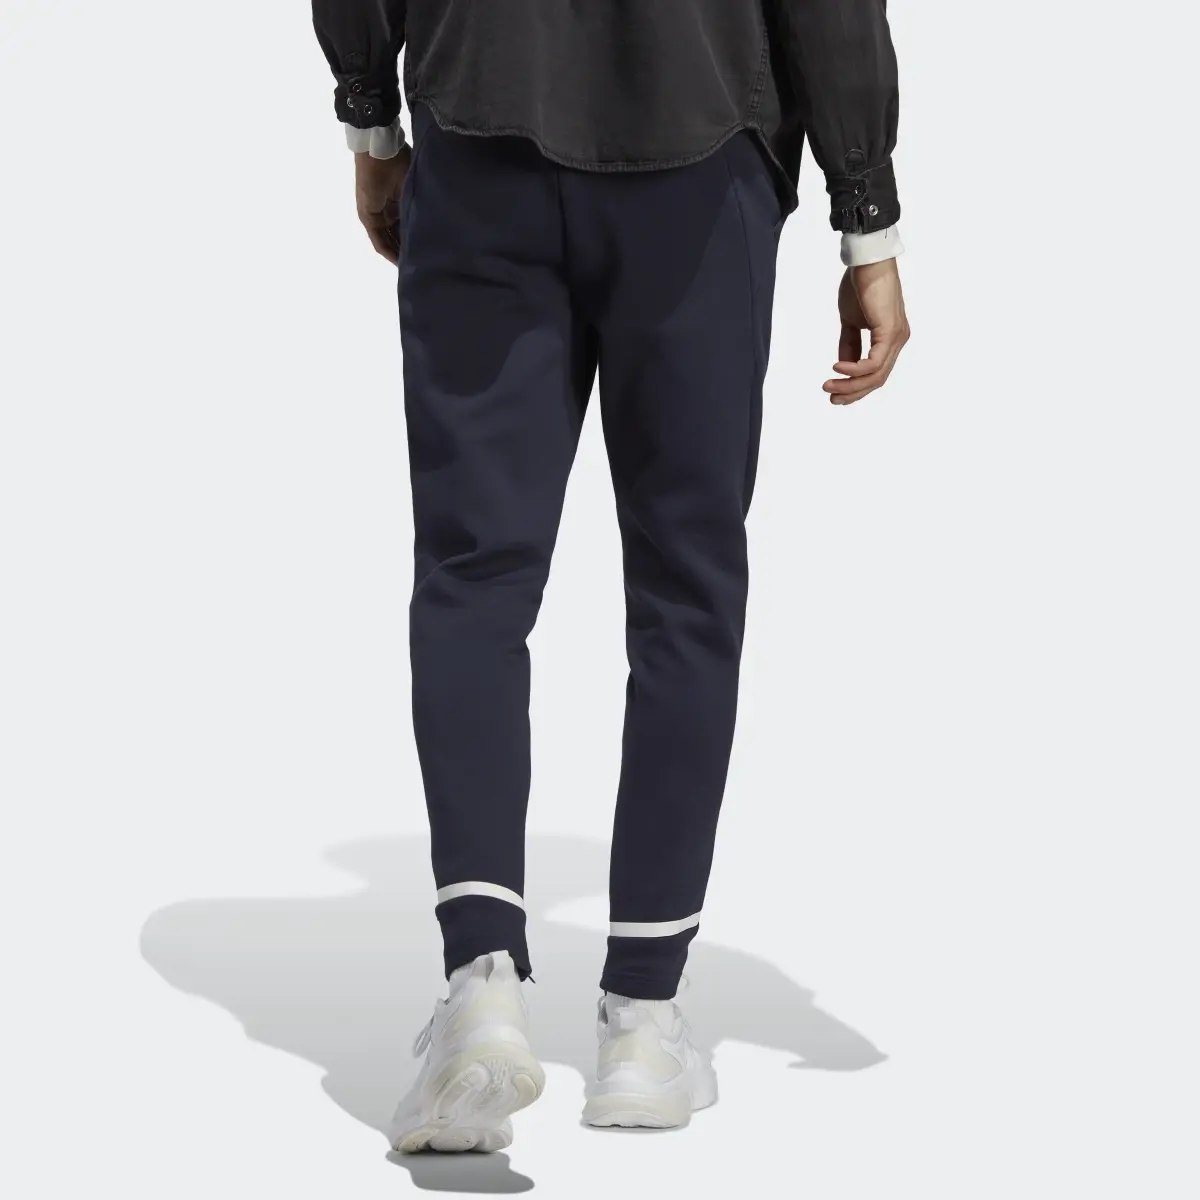 Adidas Pantaloni Designed for Gameday. 2